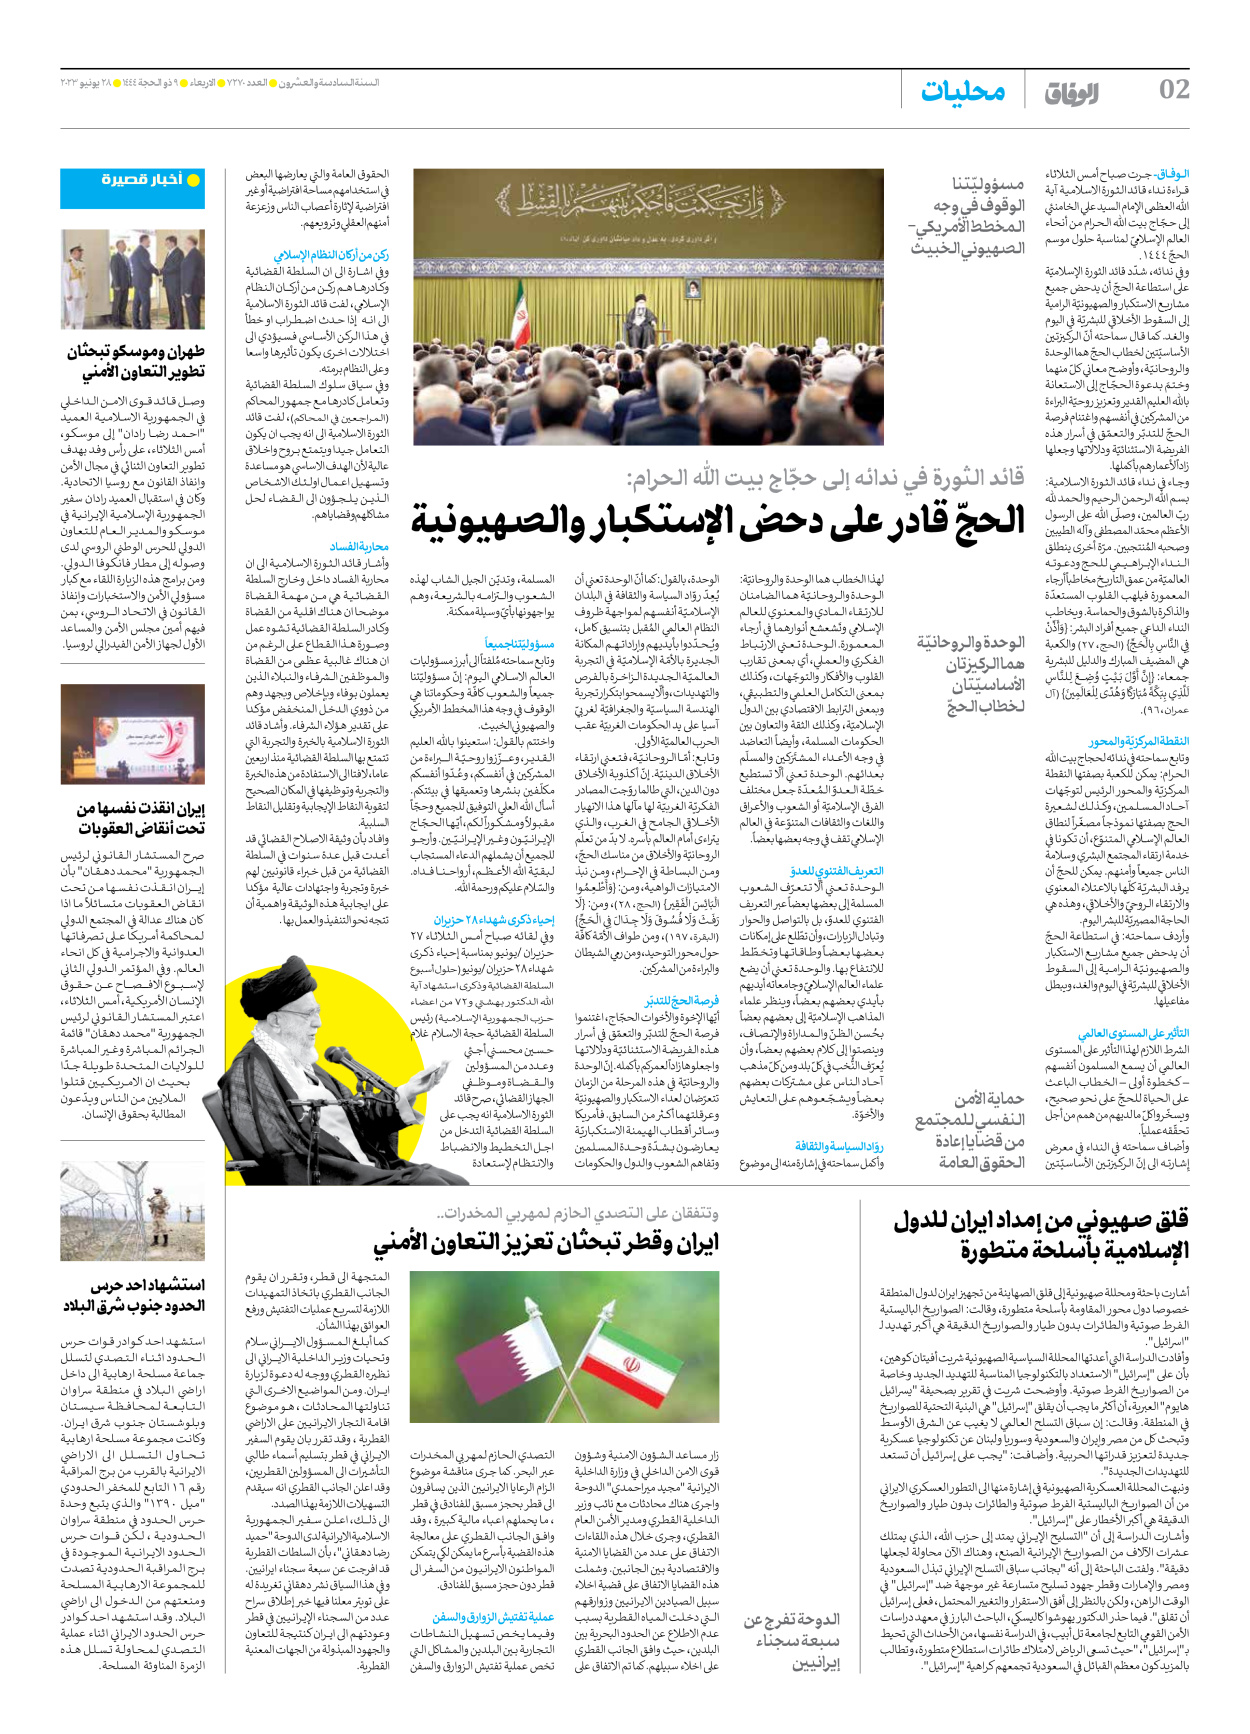 صحیفة ایران الدولیة الوفاق - العدد سبعة آلاف ومائتان وسبعون - ٢٨ يونيو ٢٠٢٣ - الصفحة ۲